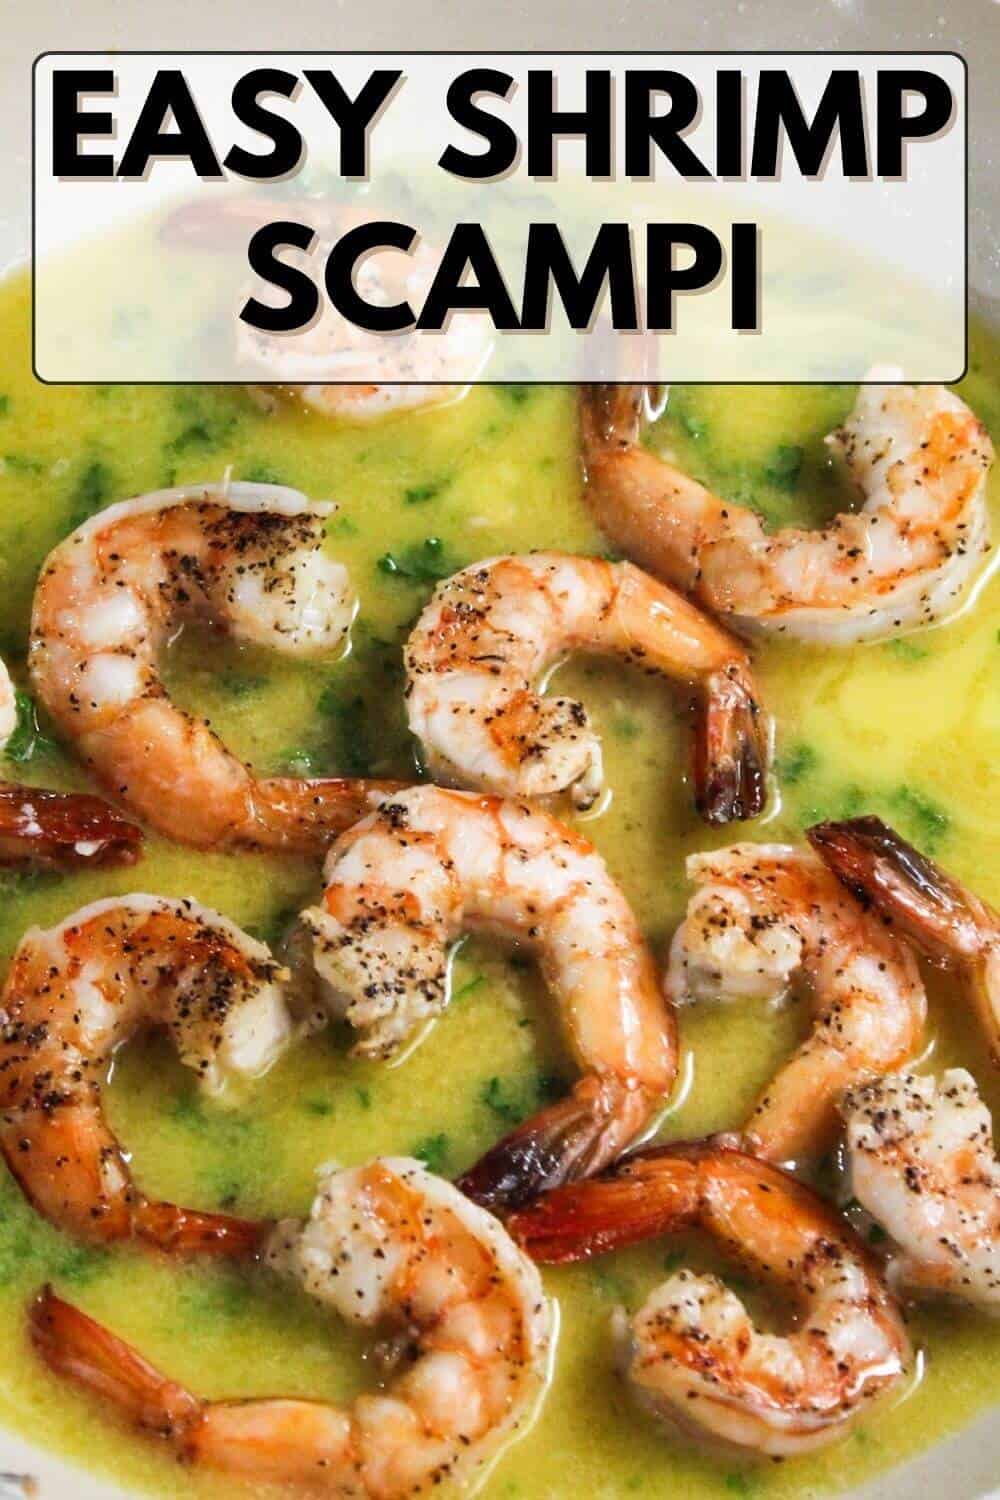 Easy shrimp scampi in a skillet.